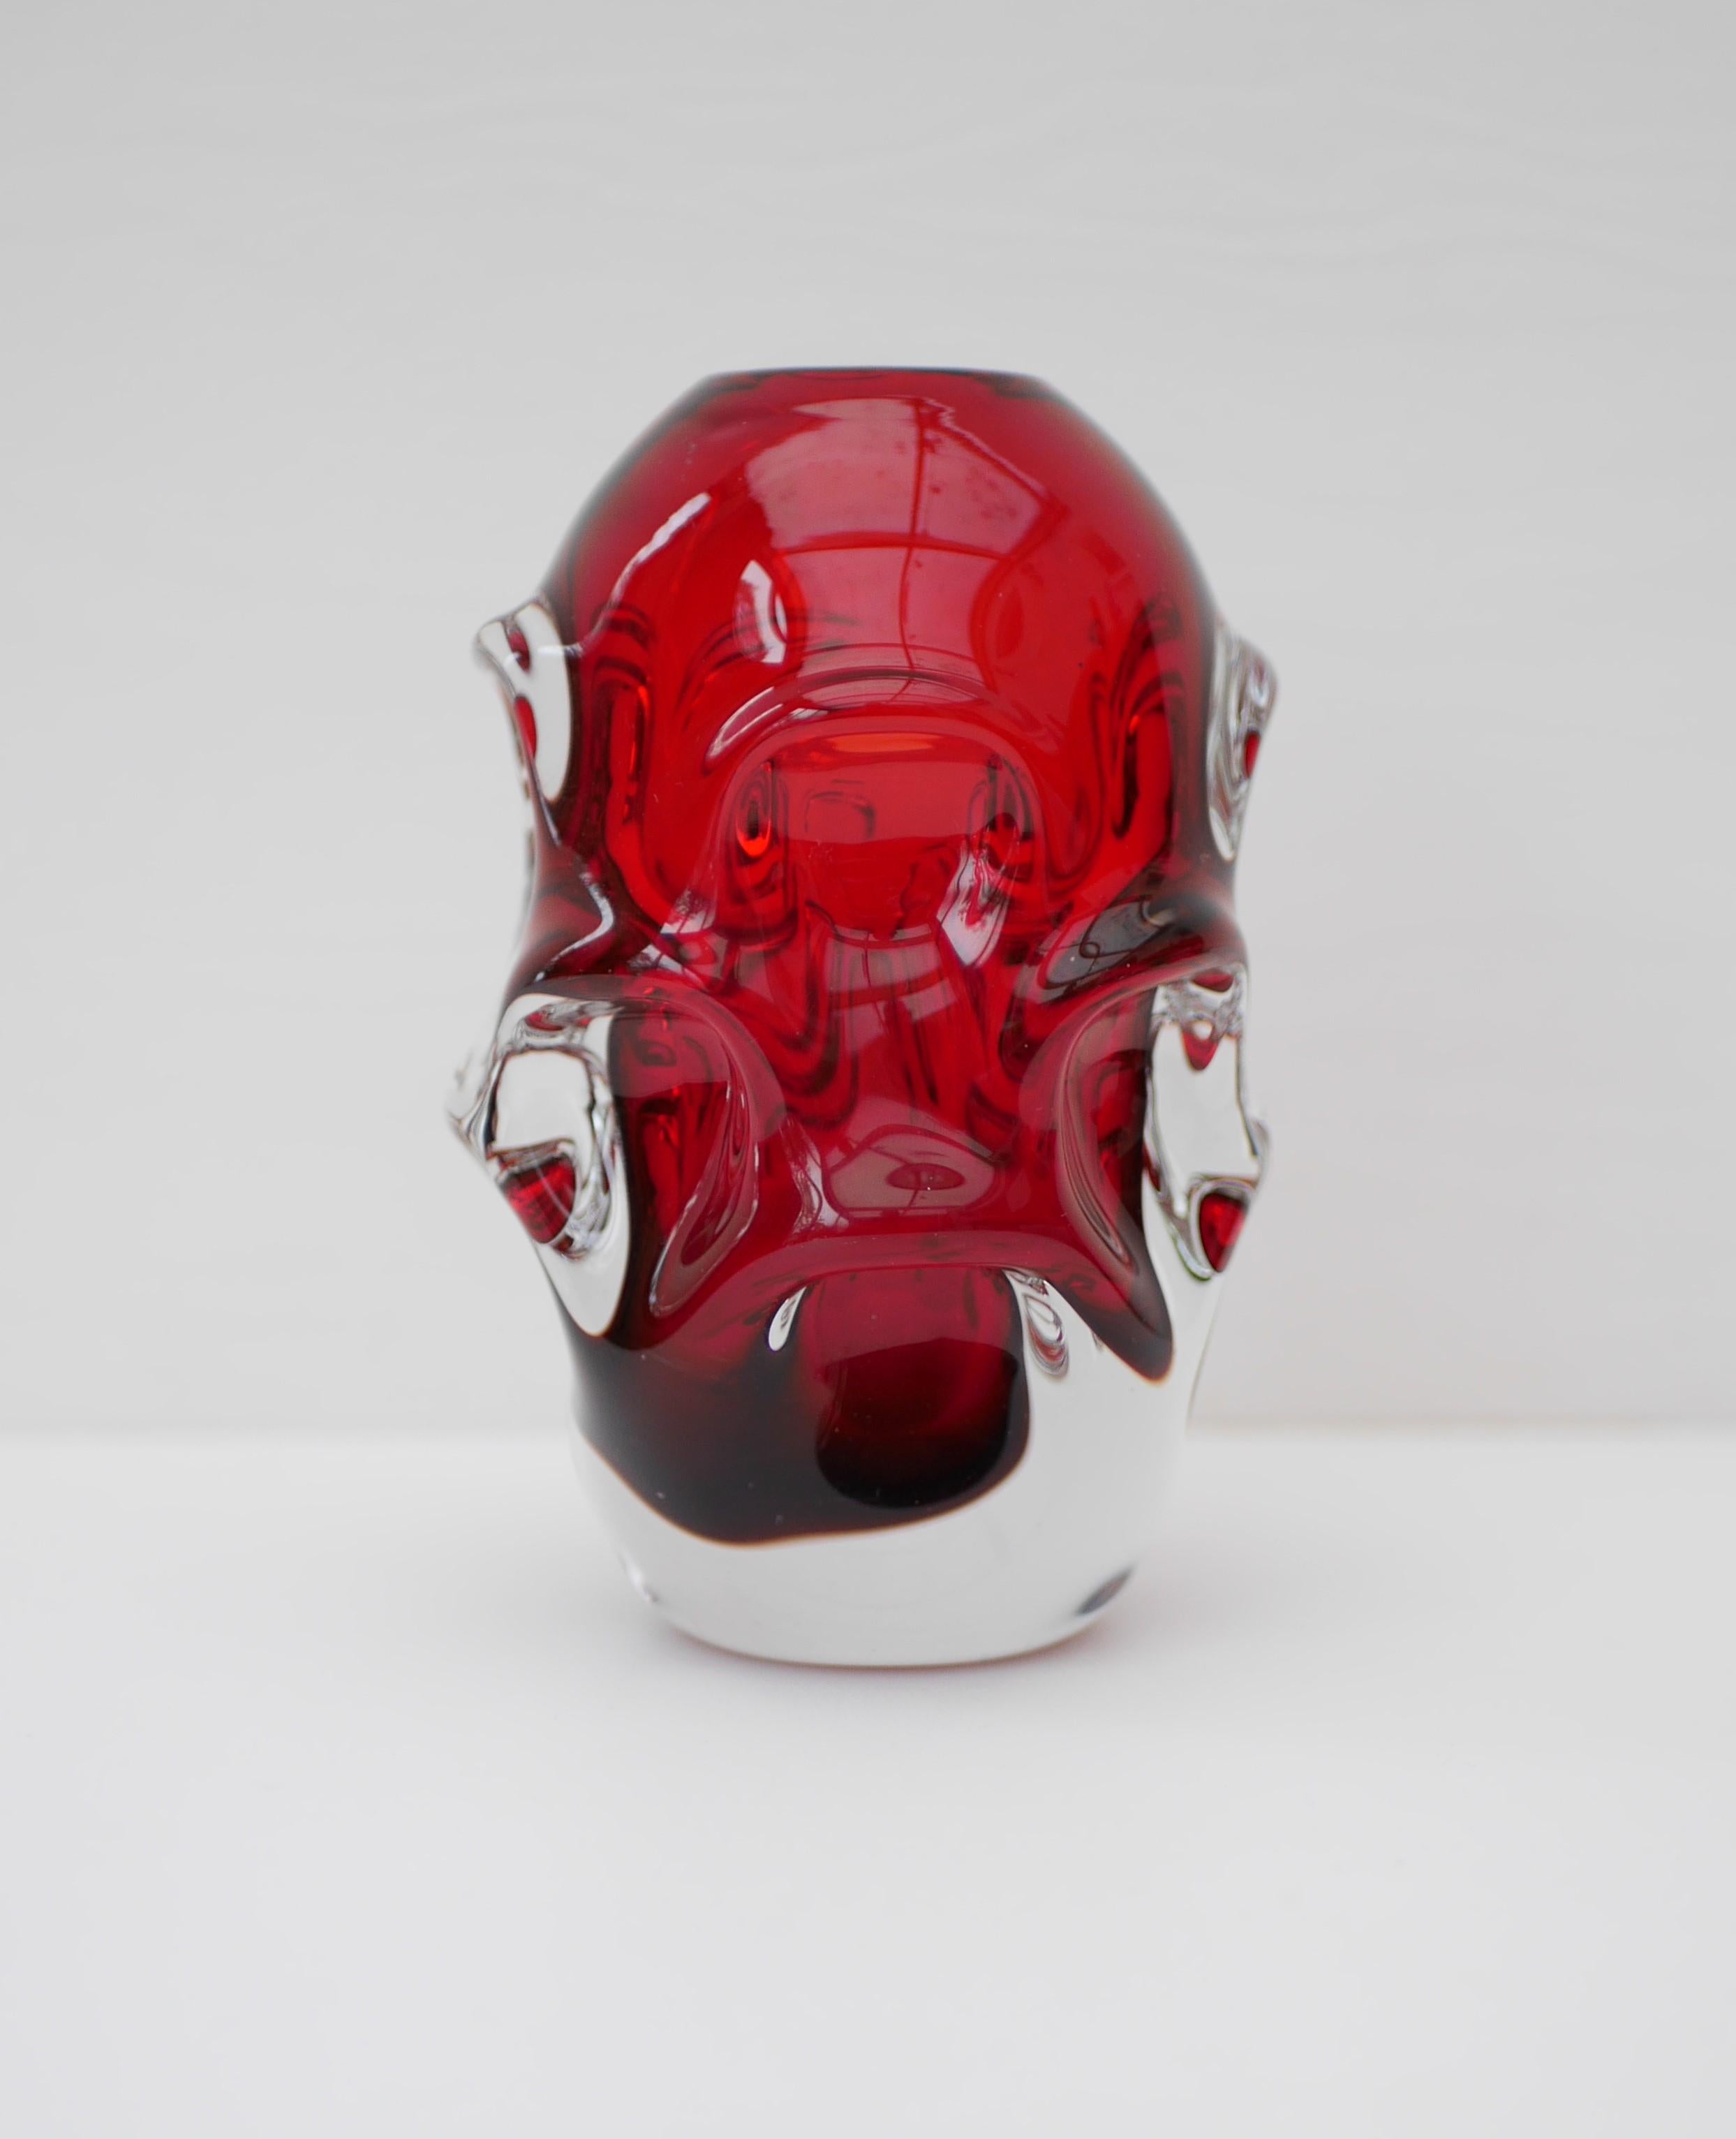 Eine atemberaubende rote Glasvase von Börne Augustsson för Åseda Glassworks, Schweden. Unsigniert aus den 1950er Jahren. Diese atemberaubende modernistische Glasvase ist ein echtes Statement.

Åseda wurde am 29. Juni 1946 gegründet und am 14. März